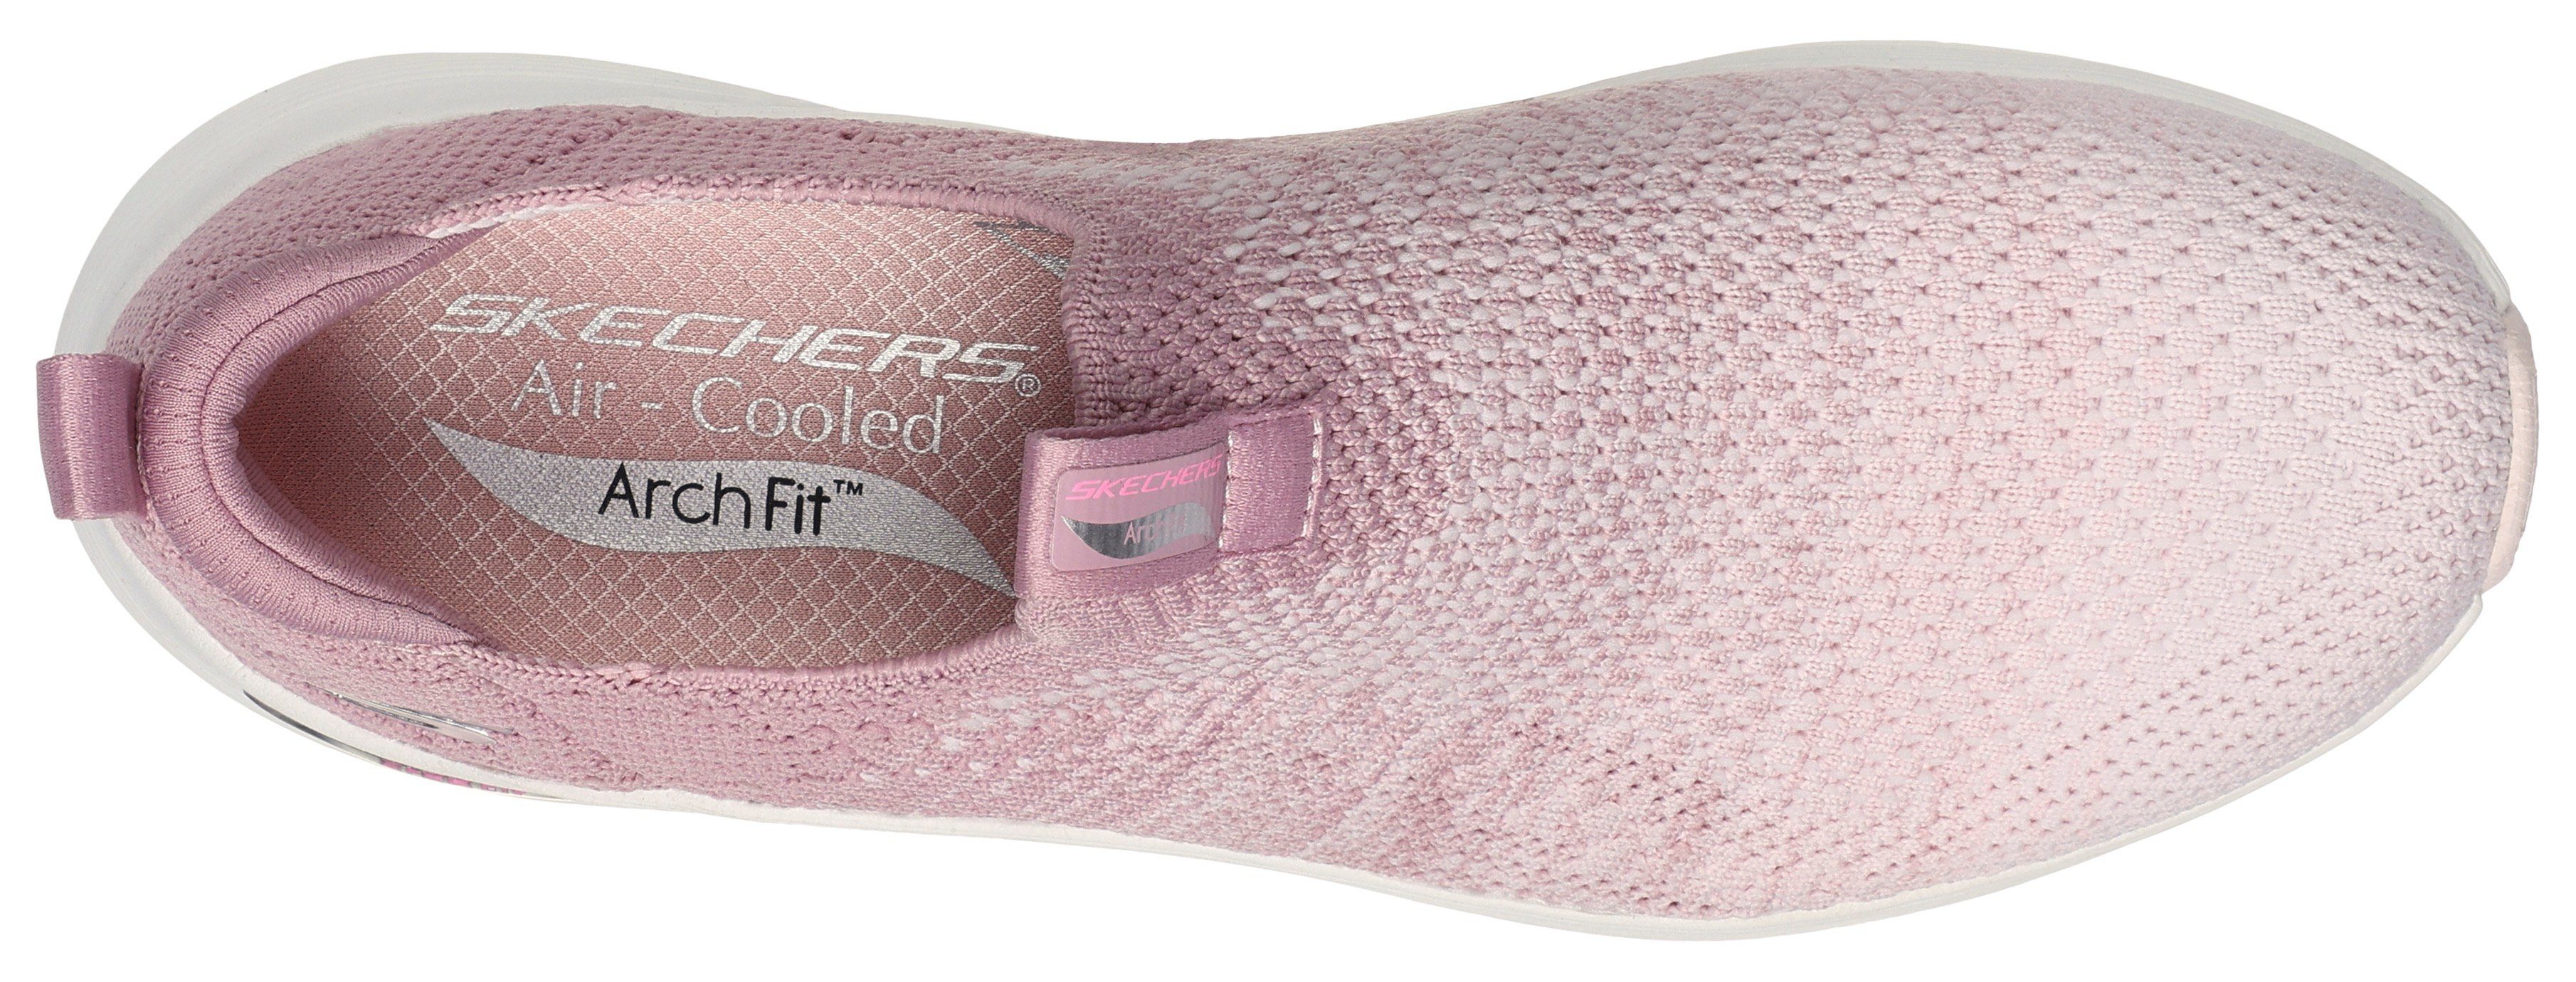 Skechers ARCH FIT 2.0 mauve stylischem Sneaker Slip-On Farbverlauf mit